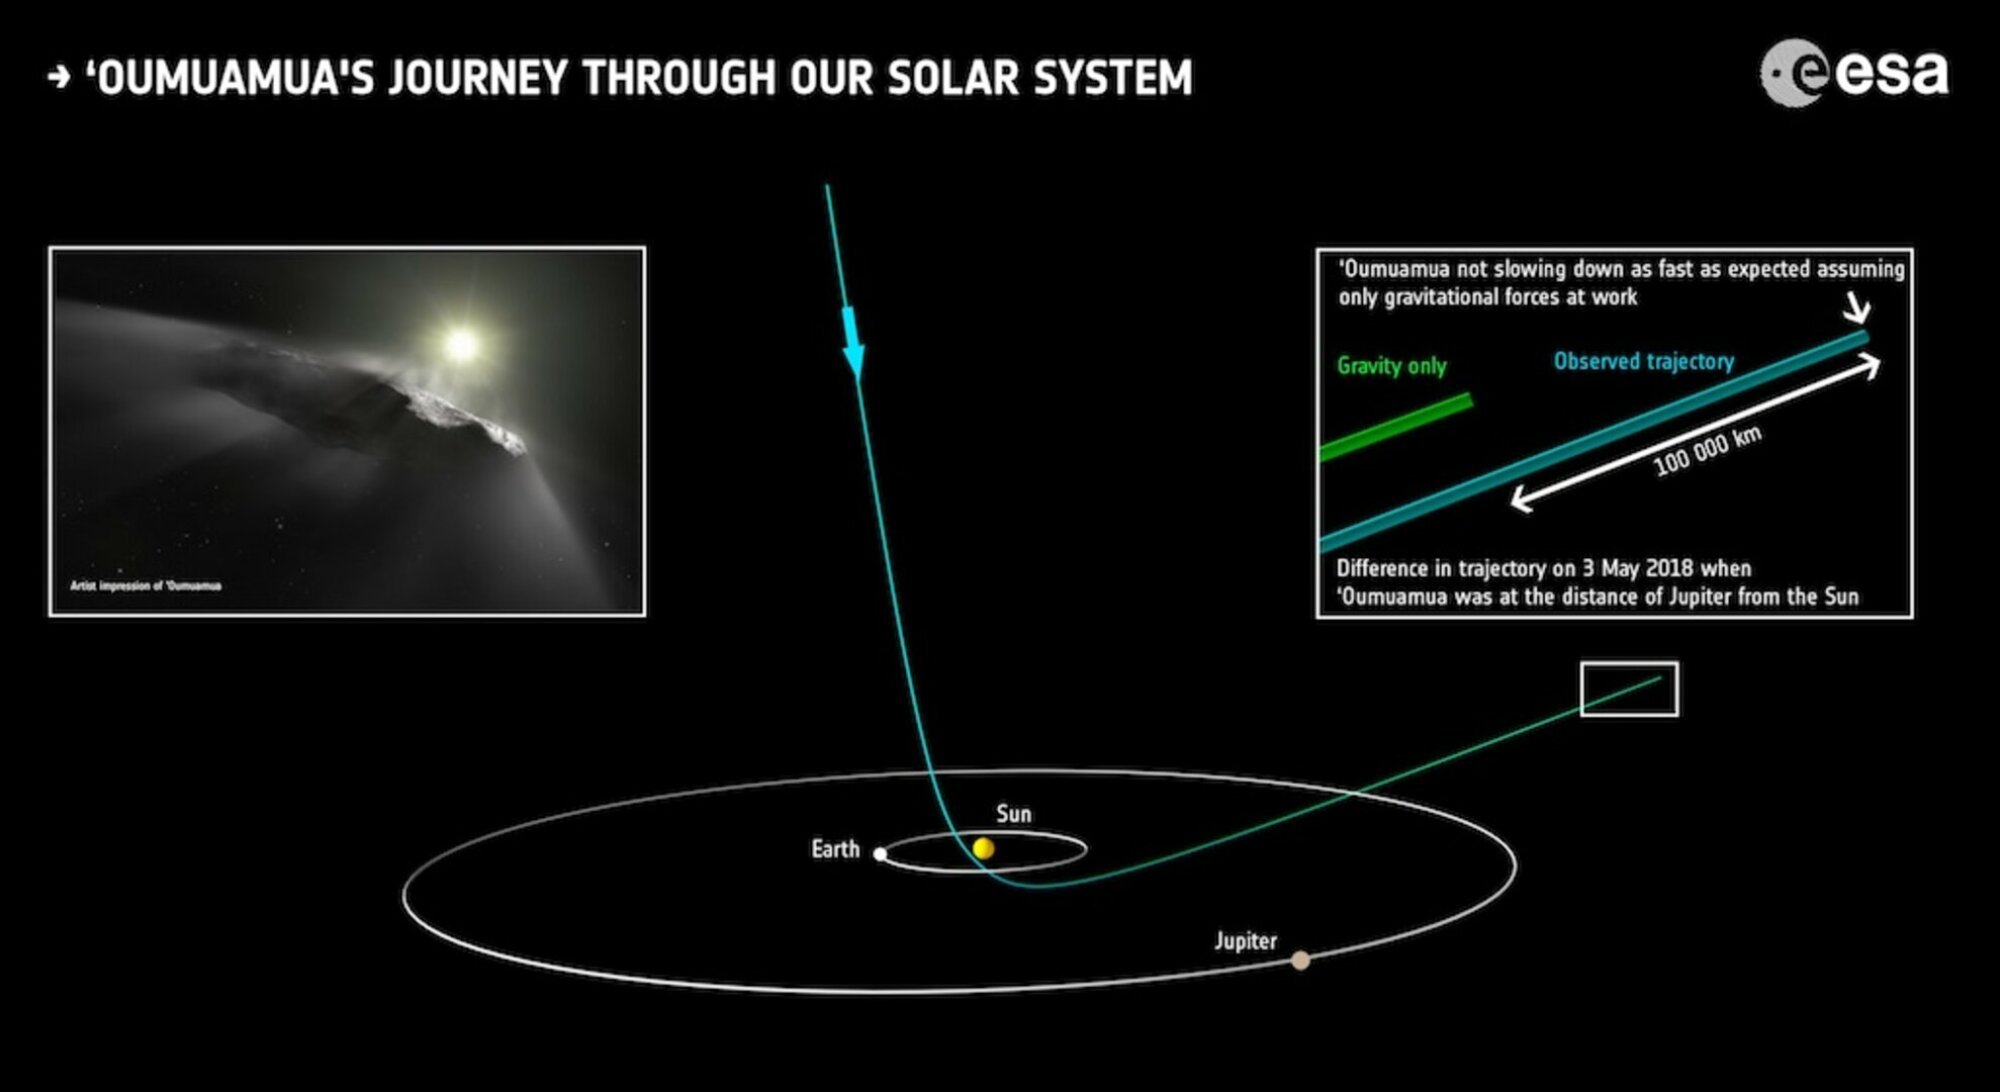 La trajectoire de la comète 'Oumuamua à travers notre système solaire.